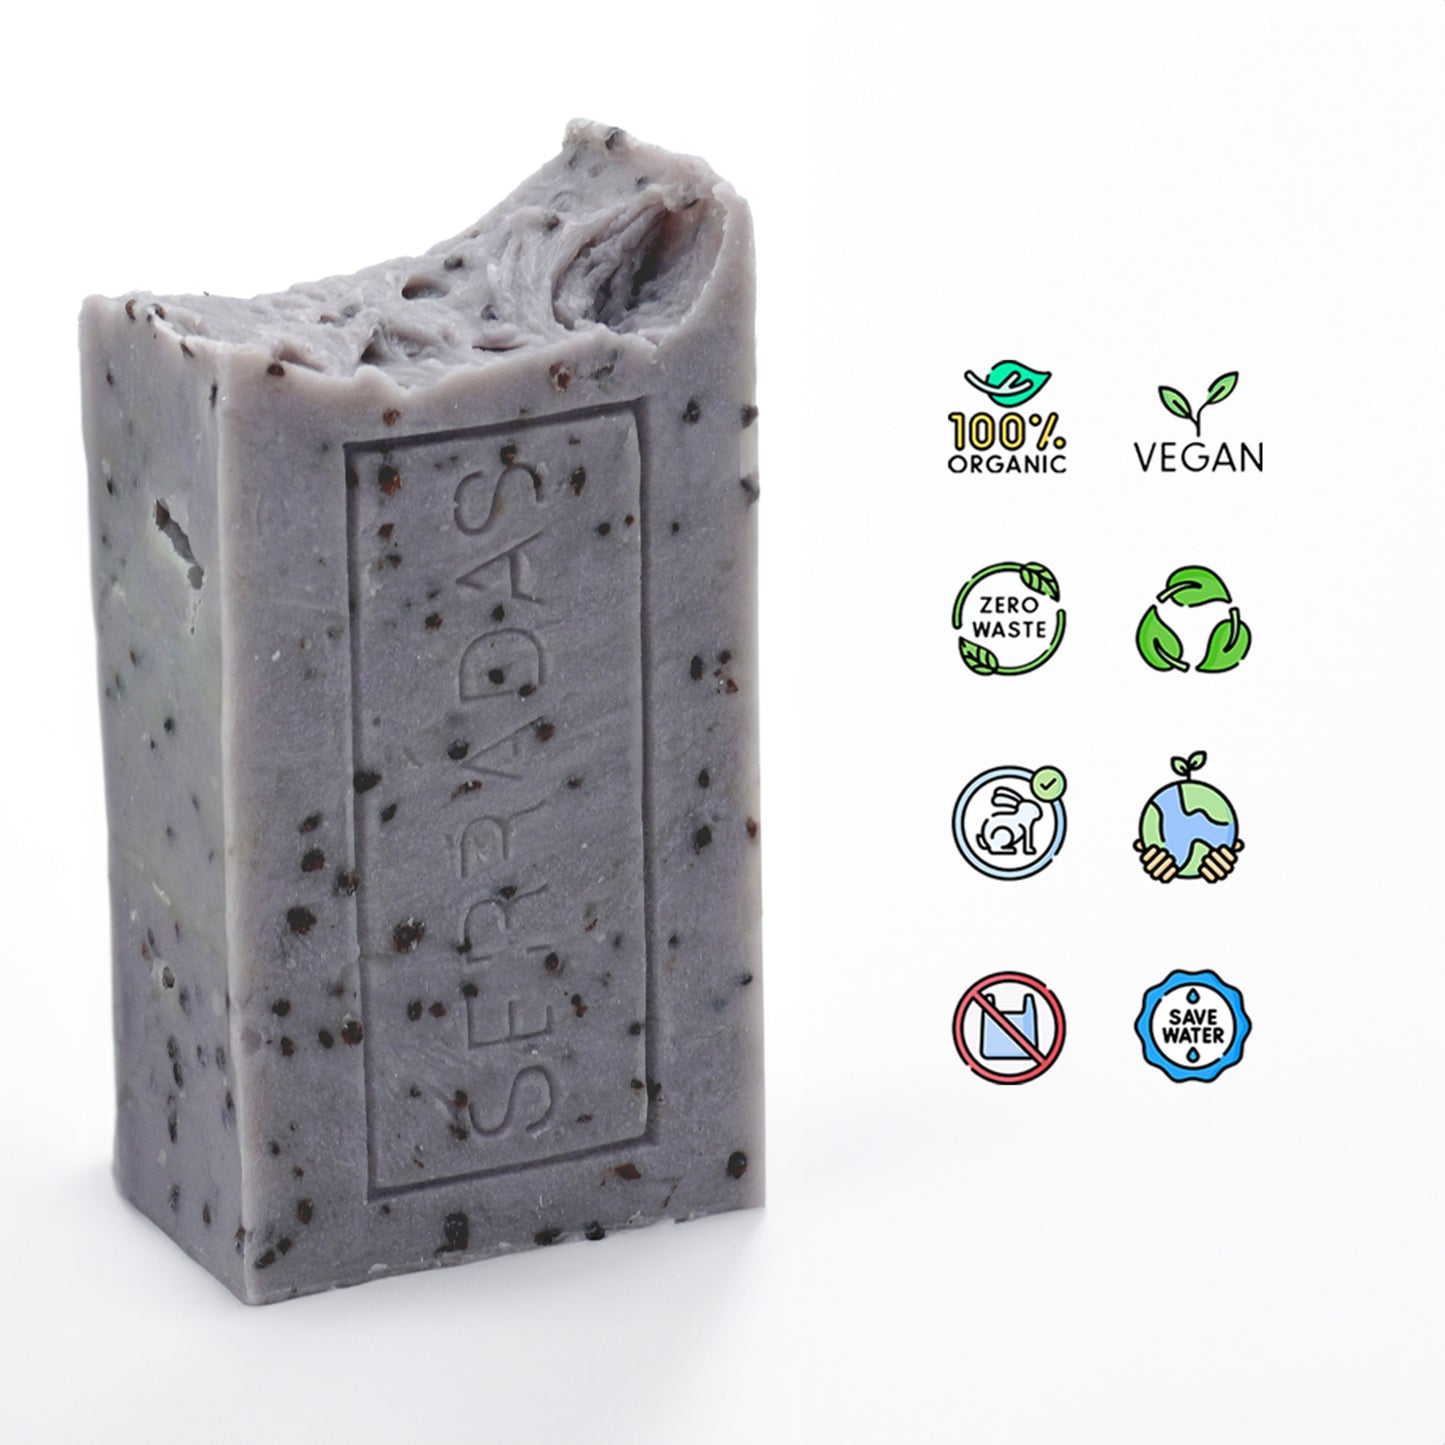 Sabonete Artesanal e Natural de Morango Vegan Organic zero waste